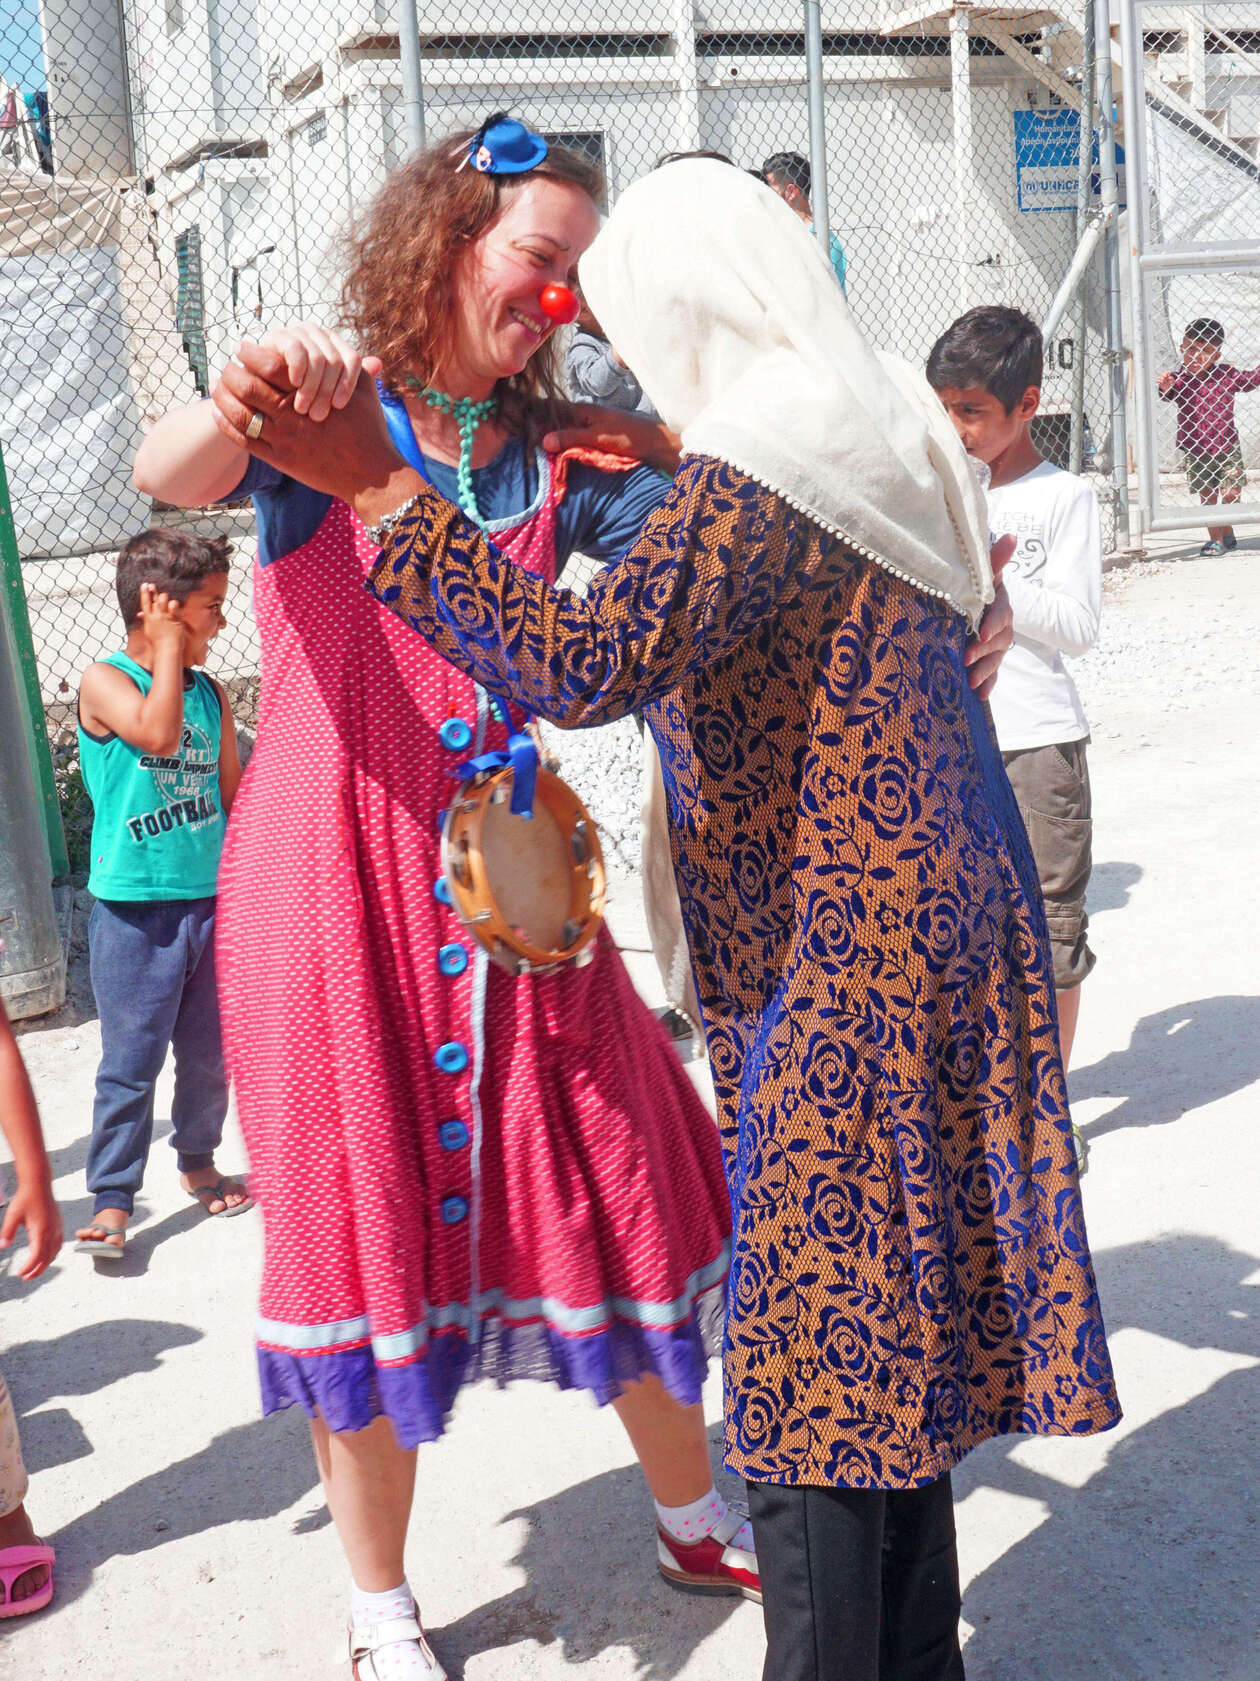 ROTE NASEN Clown Luciana tanzt mit einer Frau mit Kopftuch in einem Camp für refugees in Lesbos Griechenland im Rahmen des Emergency Smile Programmes